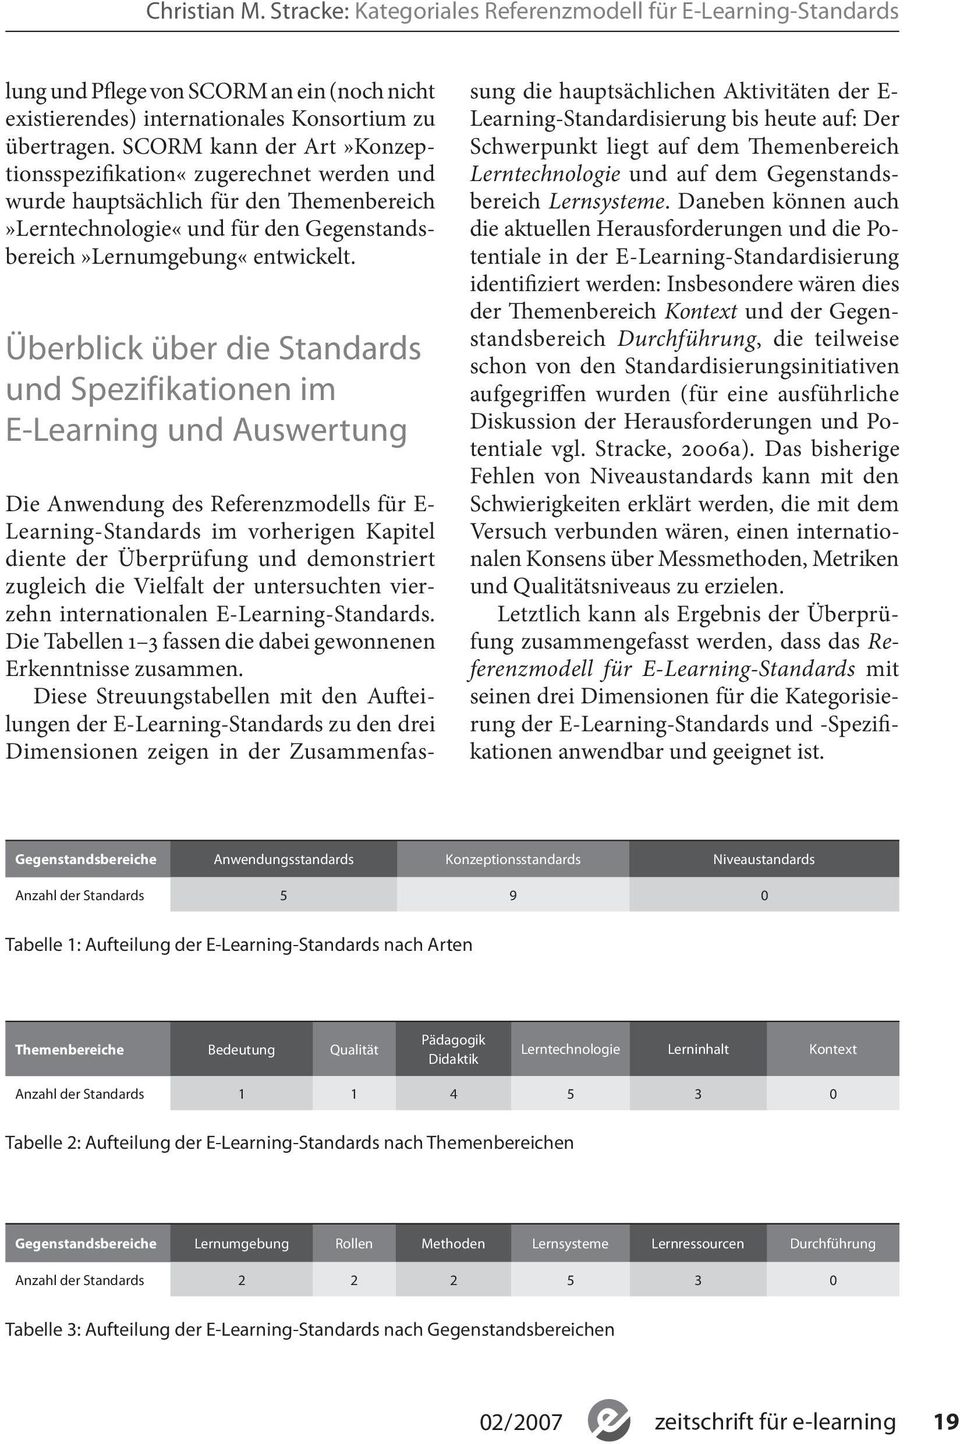 Überblick über die Standards und Spezifikationen im E-Learning und Auswertung Die Anwendung des Referenzmodells für E- Learning-Standards im vorherigen Kapitel diente der Überprüfung und demonstriert